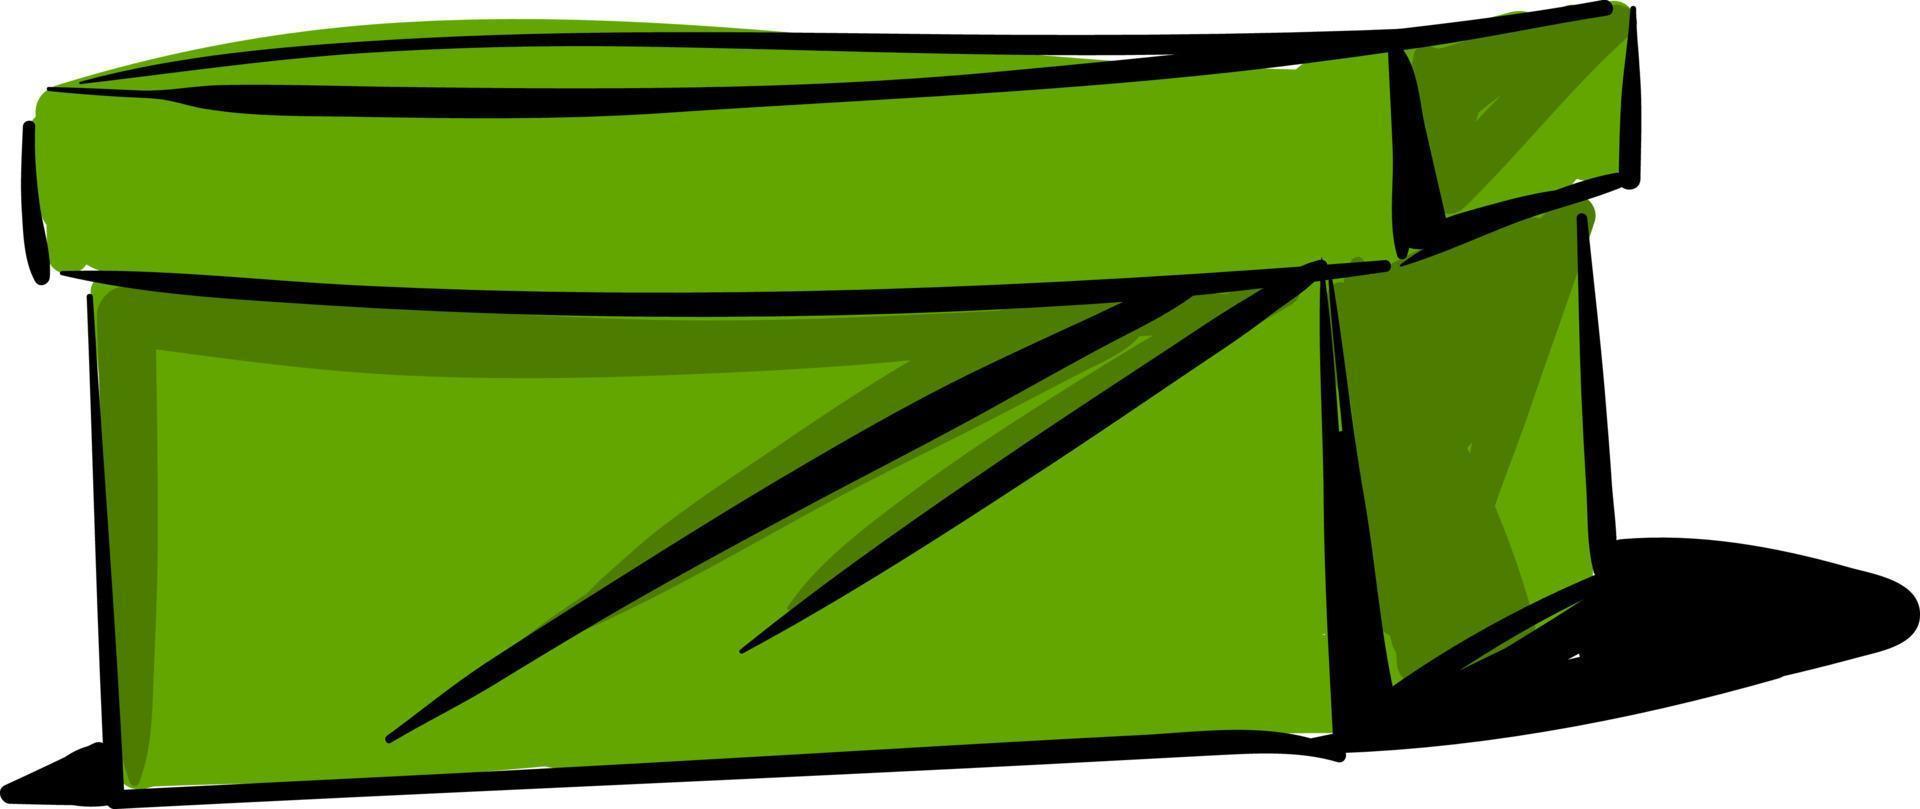 lång grön låda, illustration, vektor på vit bakgrund.